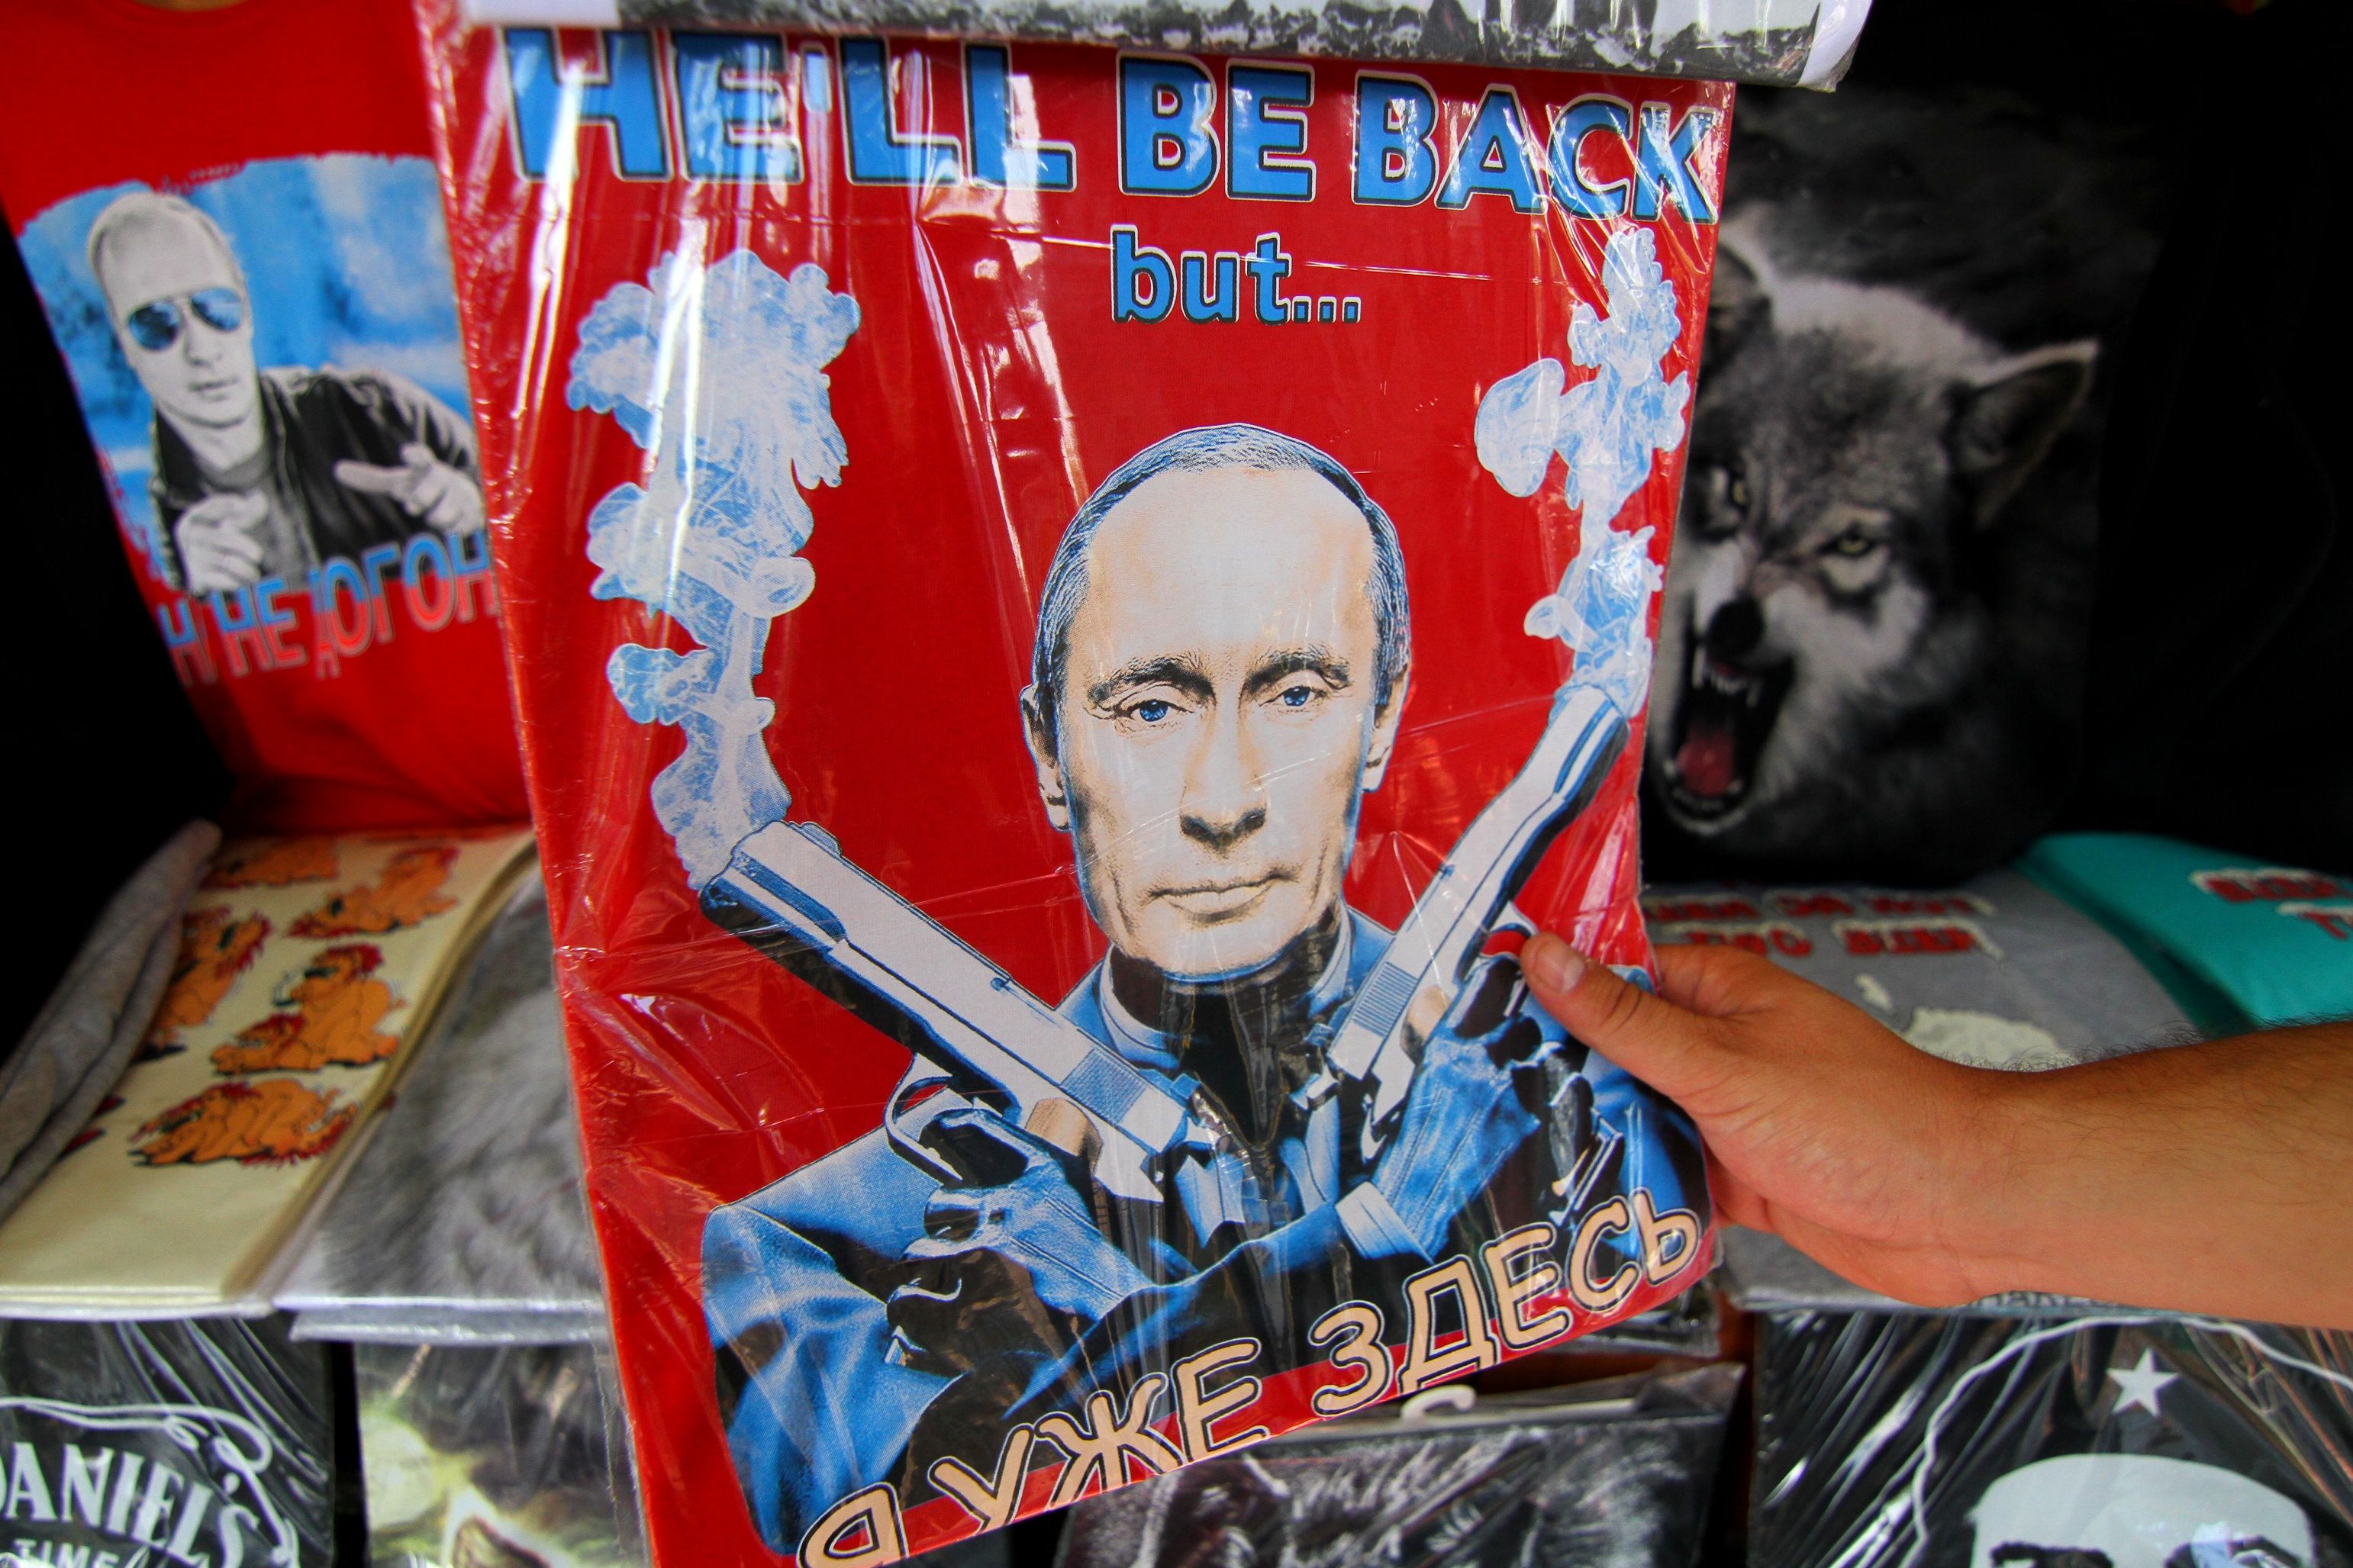 Putin je nenahraditelný, věří většina Rusů